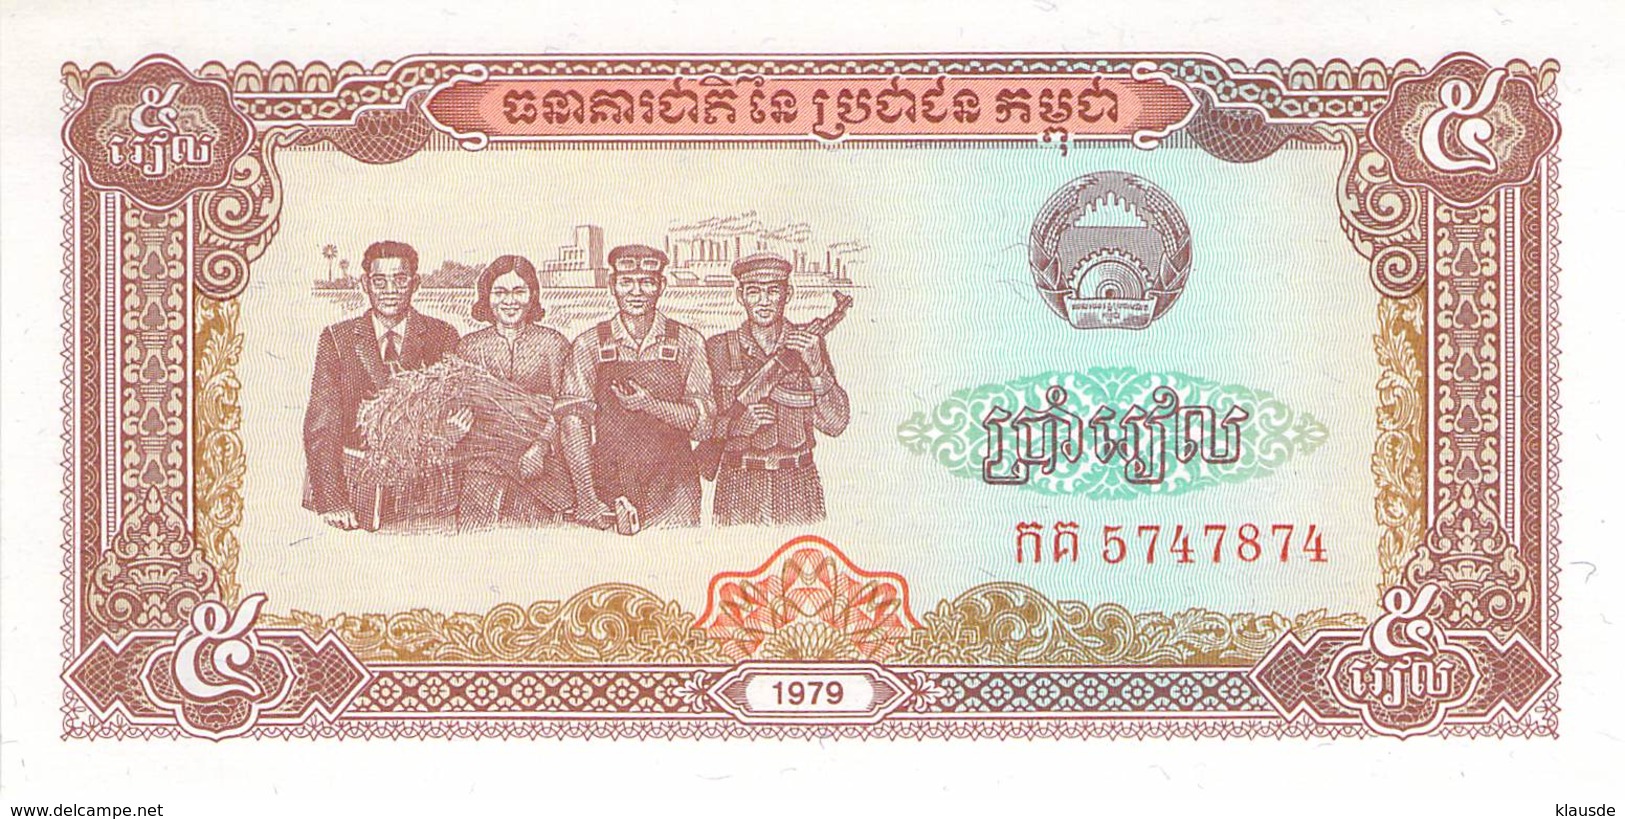 5 Riels Banknote Kambodscha - Cambodge